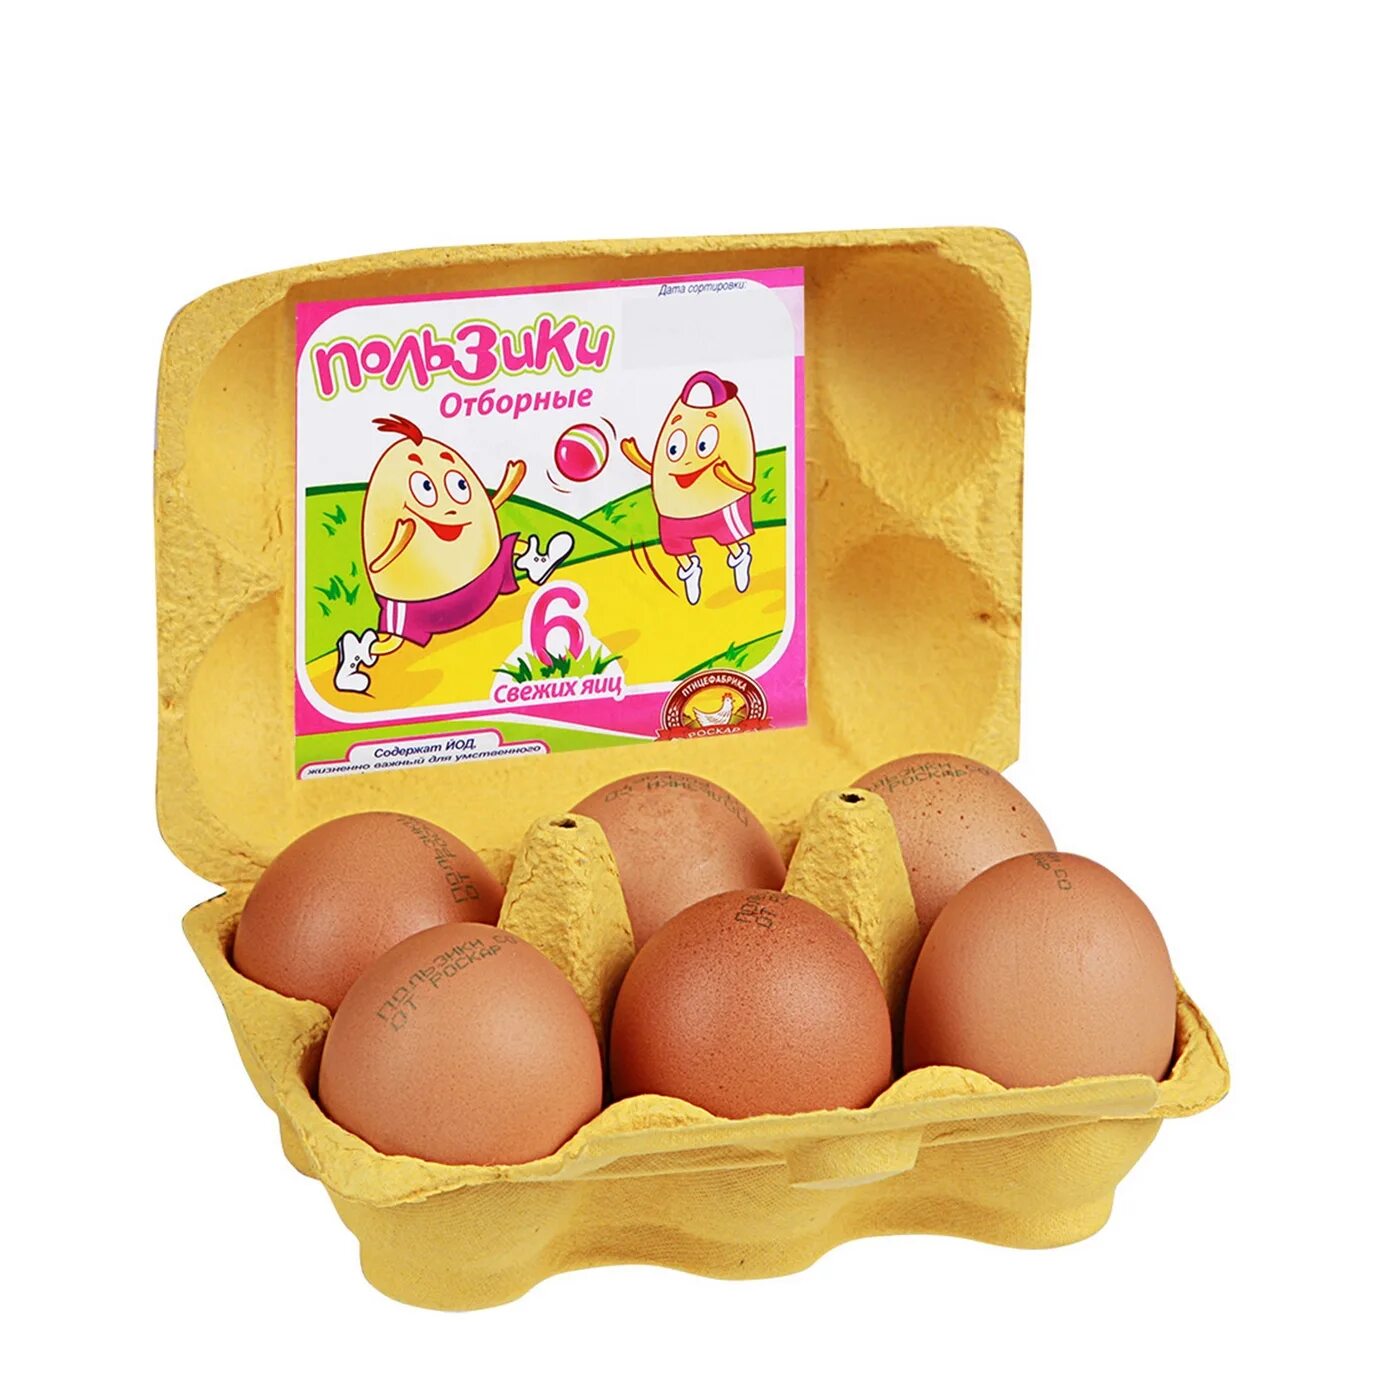 Яйца пользики. Упаковка для яиц. Яйца куриные в упаковке. Упаковка для яиц 6 штук. Яйца купить гомель